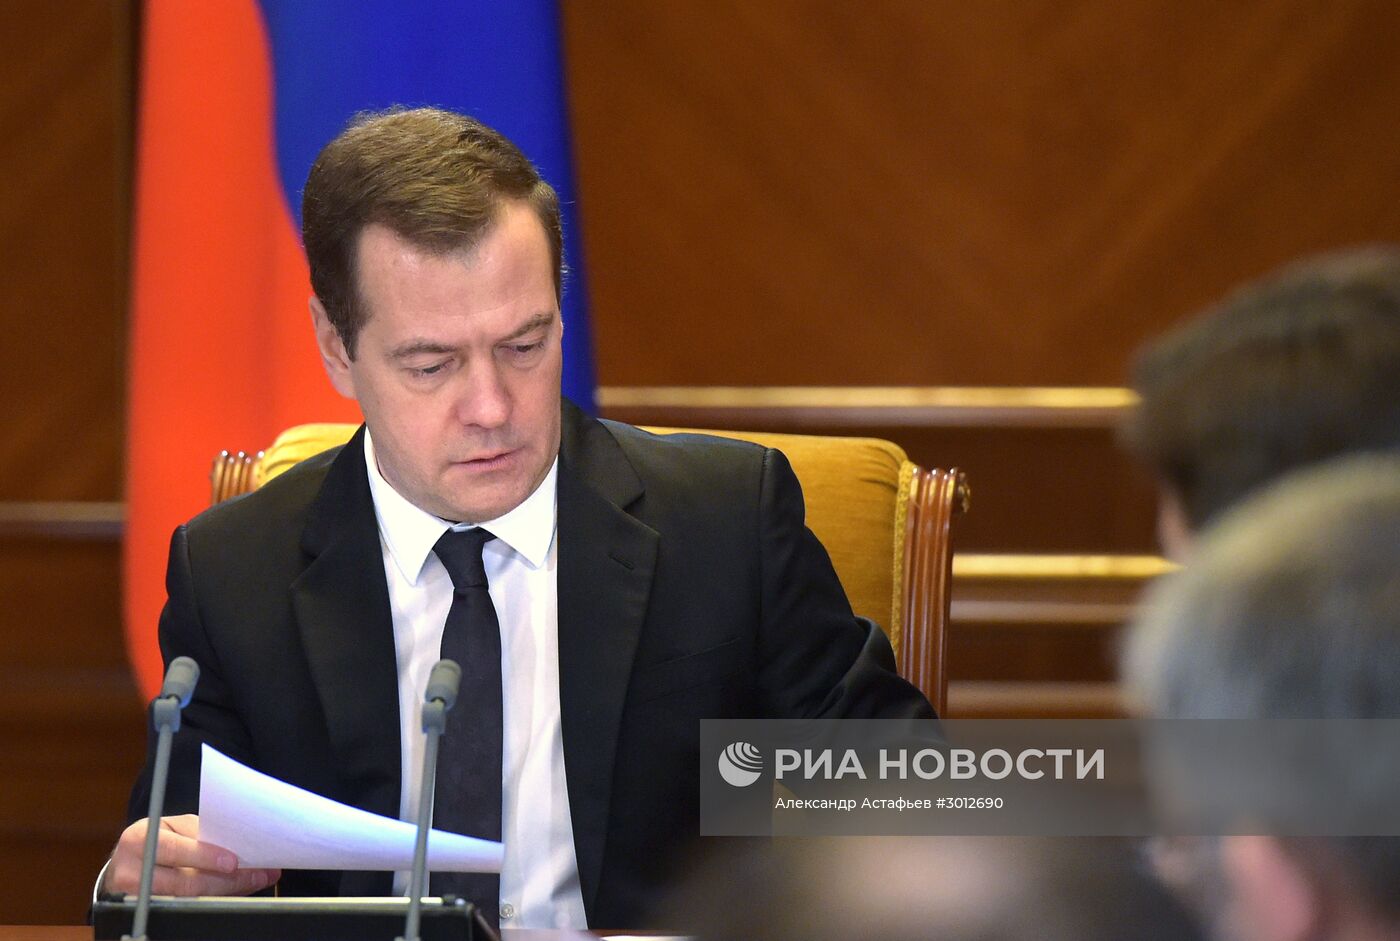 Премьер-министр РФ Д. Медведев провел совещание по дорожному хозяйству в РФ